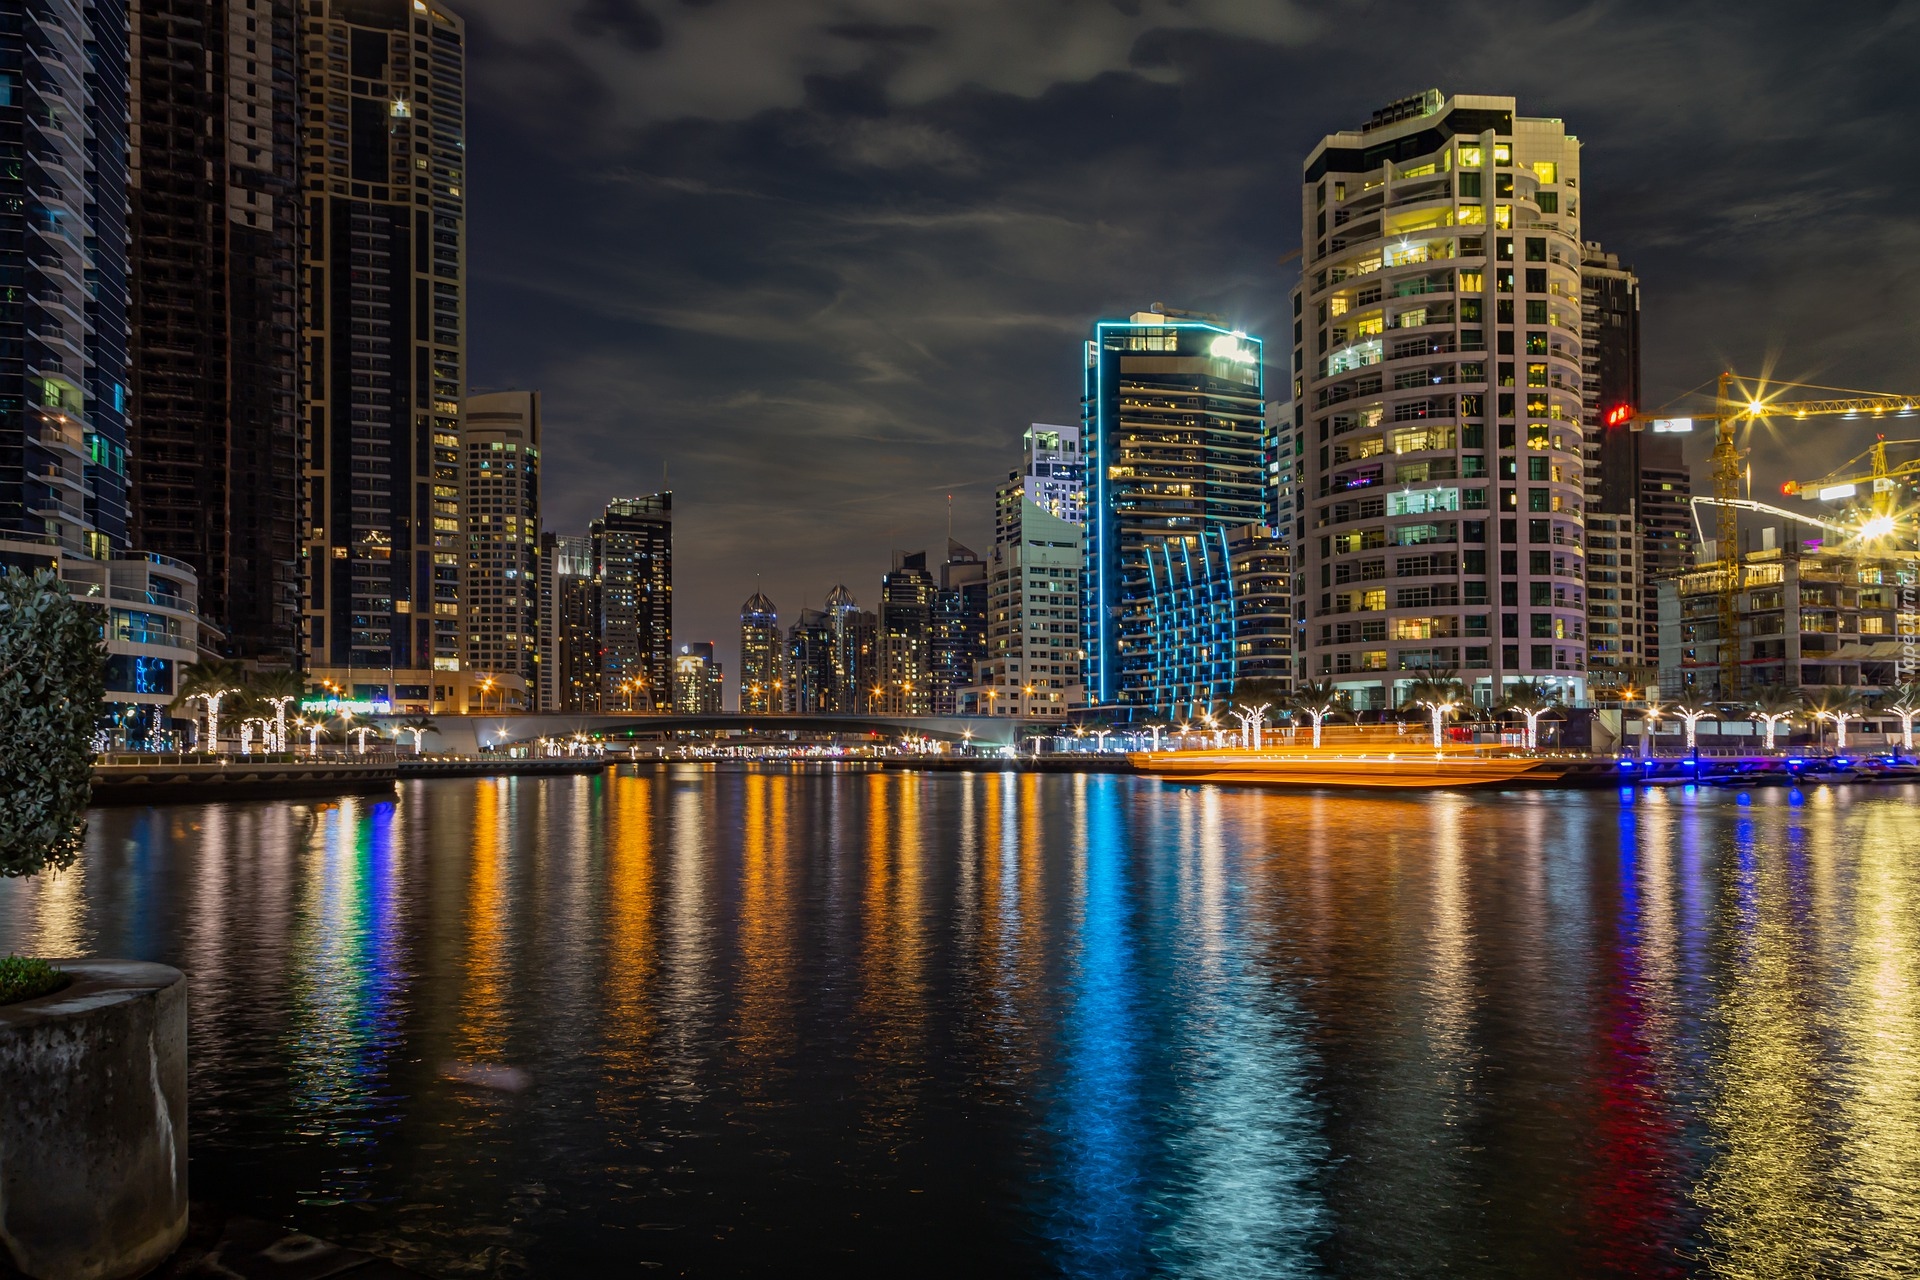 Miasto nocą, Wieżowce, Rzeka, Dubaj, Zjednoczone Emiraty Arabskie